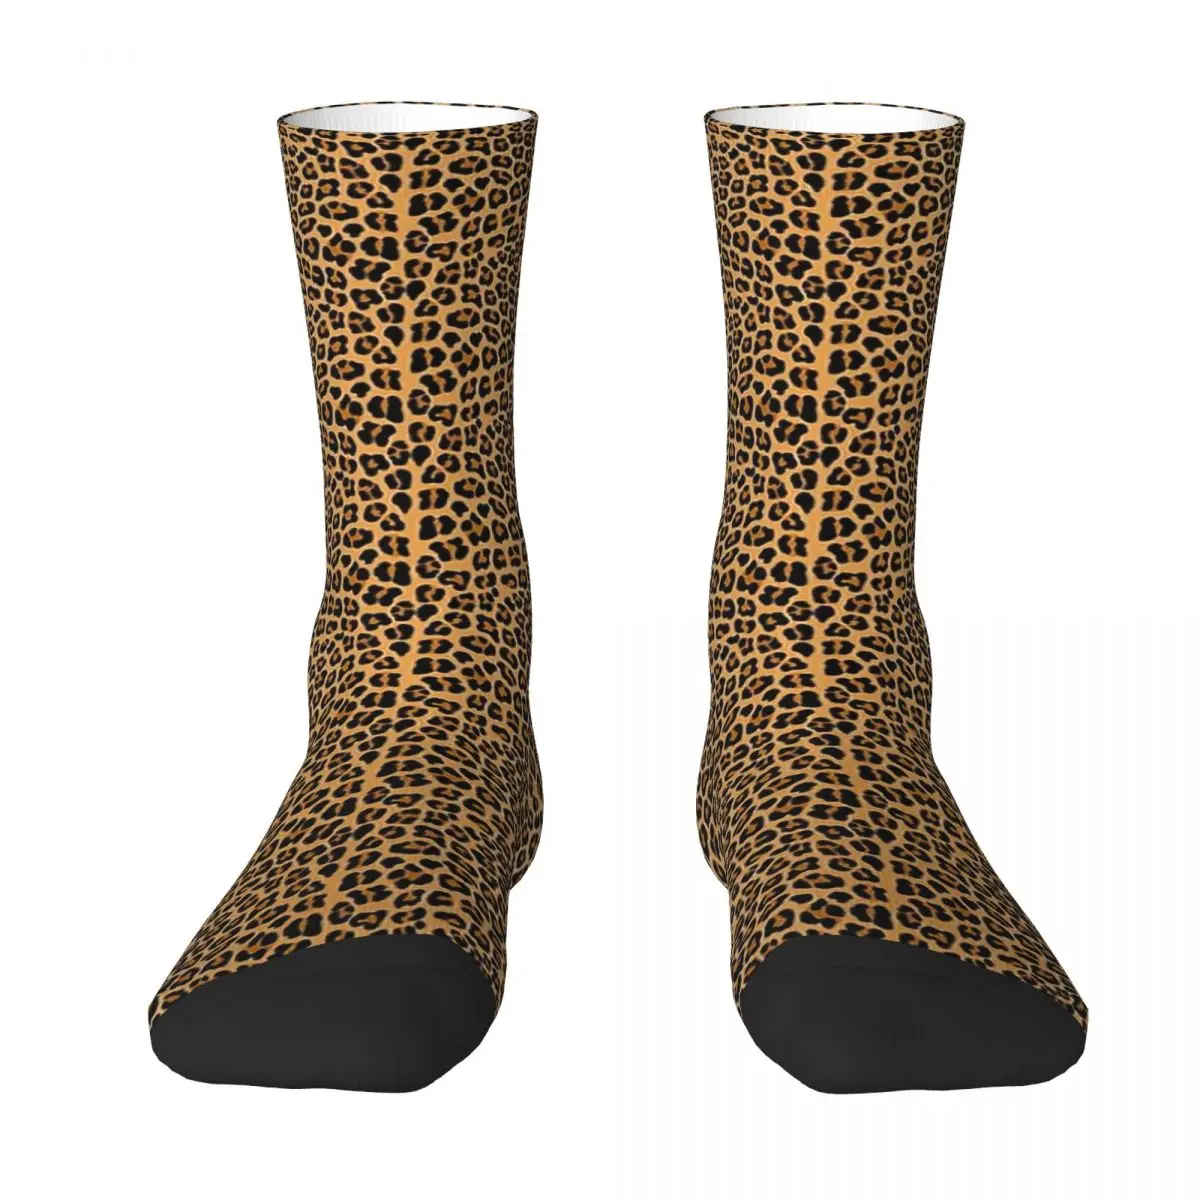 Leopard Print Adult Socks Unisex socks,men Socks women Socks